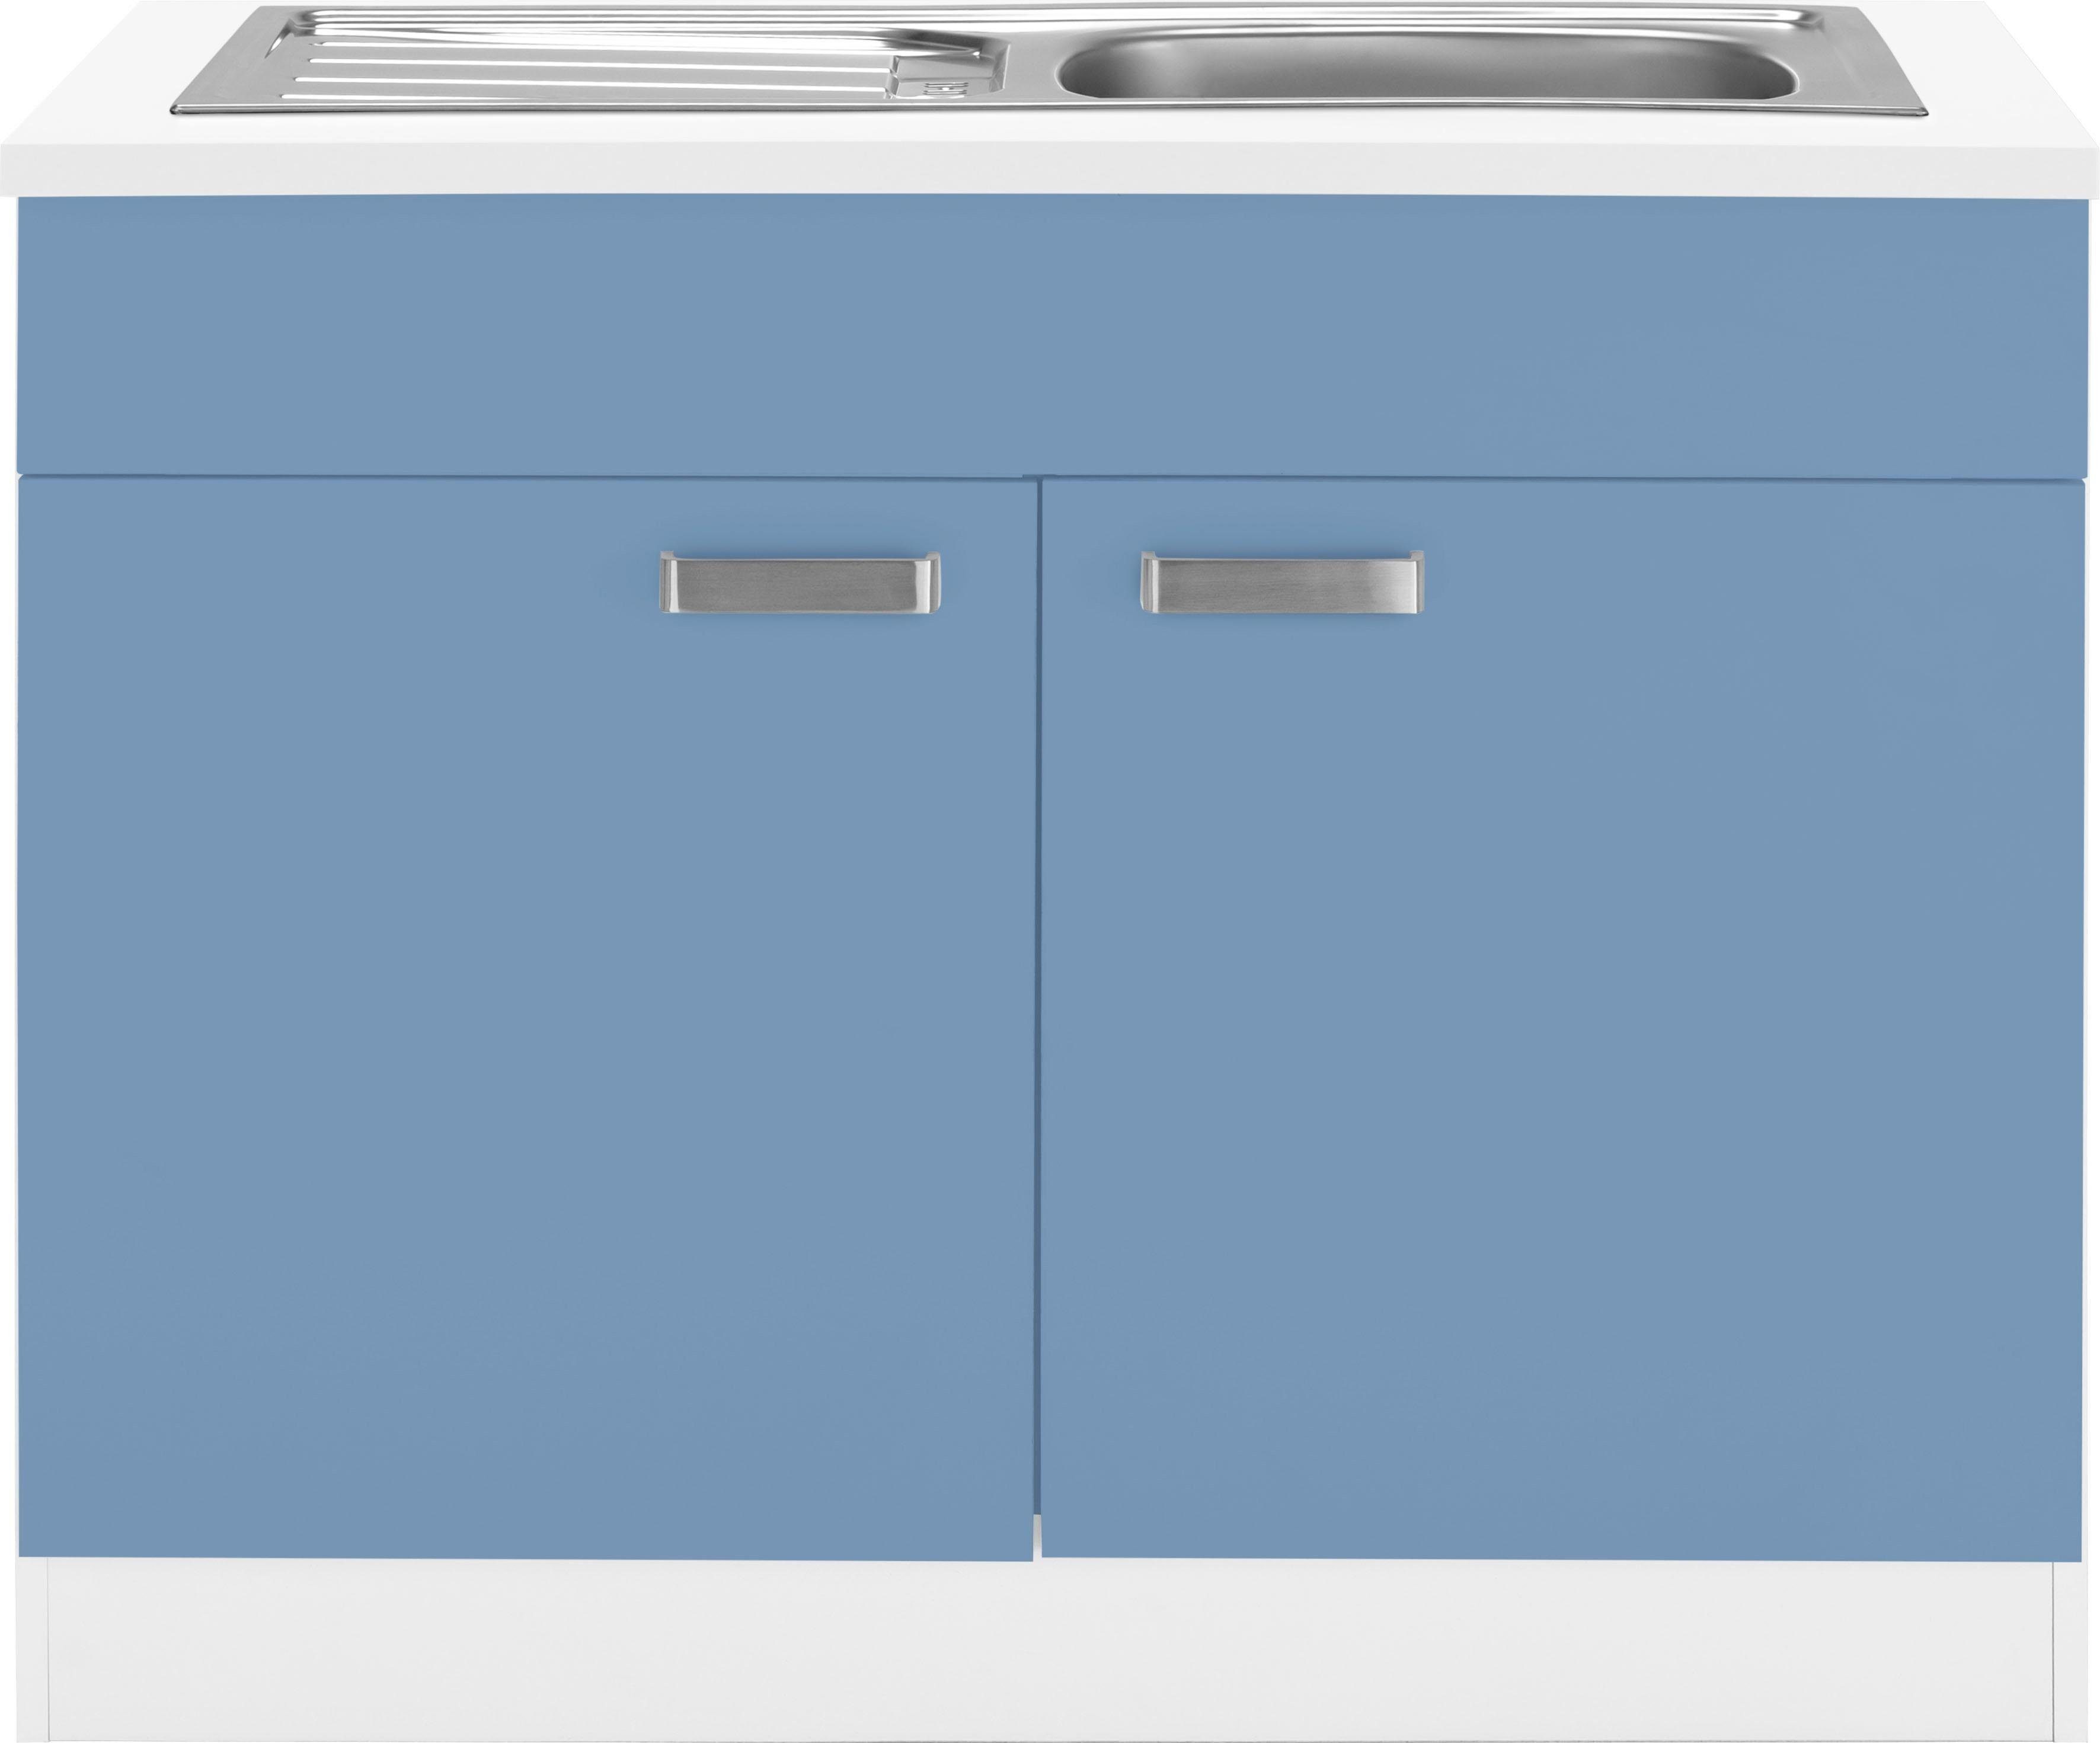 wiho Küchen Spülenschrank Husum 100 cm breit himmelblau/weiß